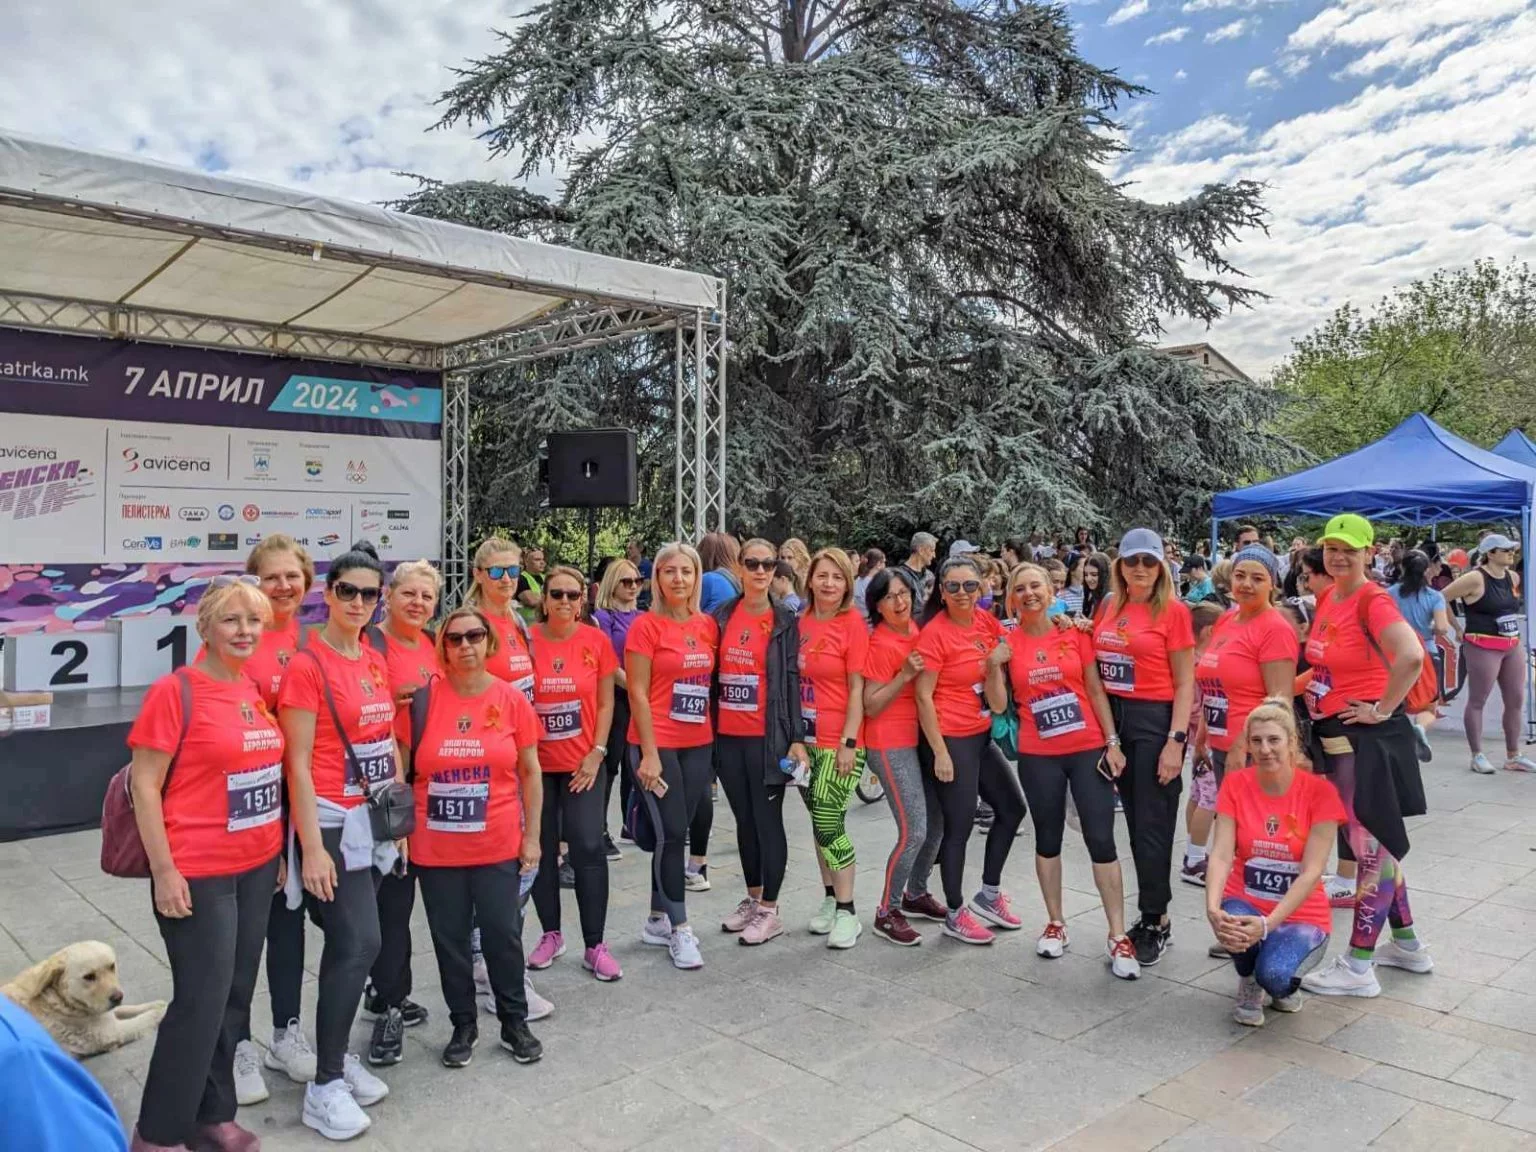 Gratë përmes garës së vrapit në mbështetje të grave me sklerozë të shumëfishtë. Foto: Shoqata Kombëtare për Ndihmë dhe Mbështetje të Personave me Sklerozë të Shumëfishtë